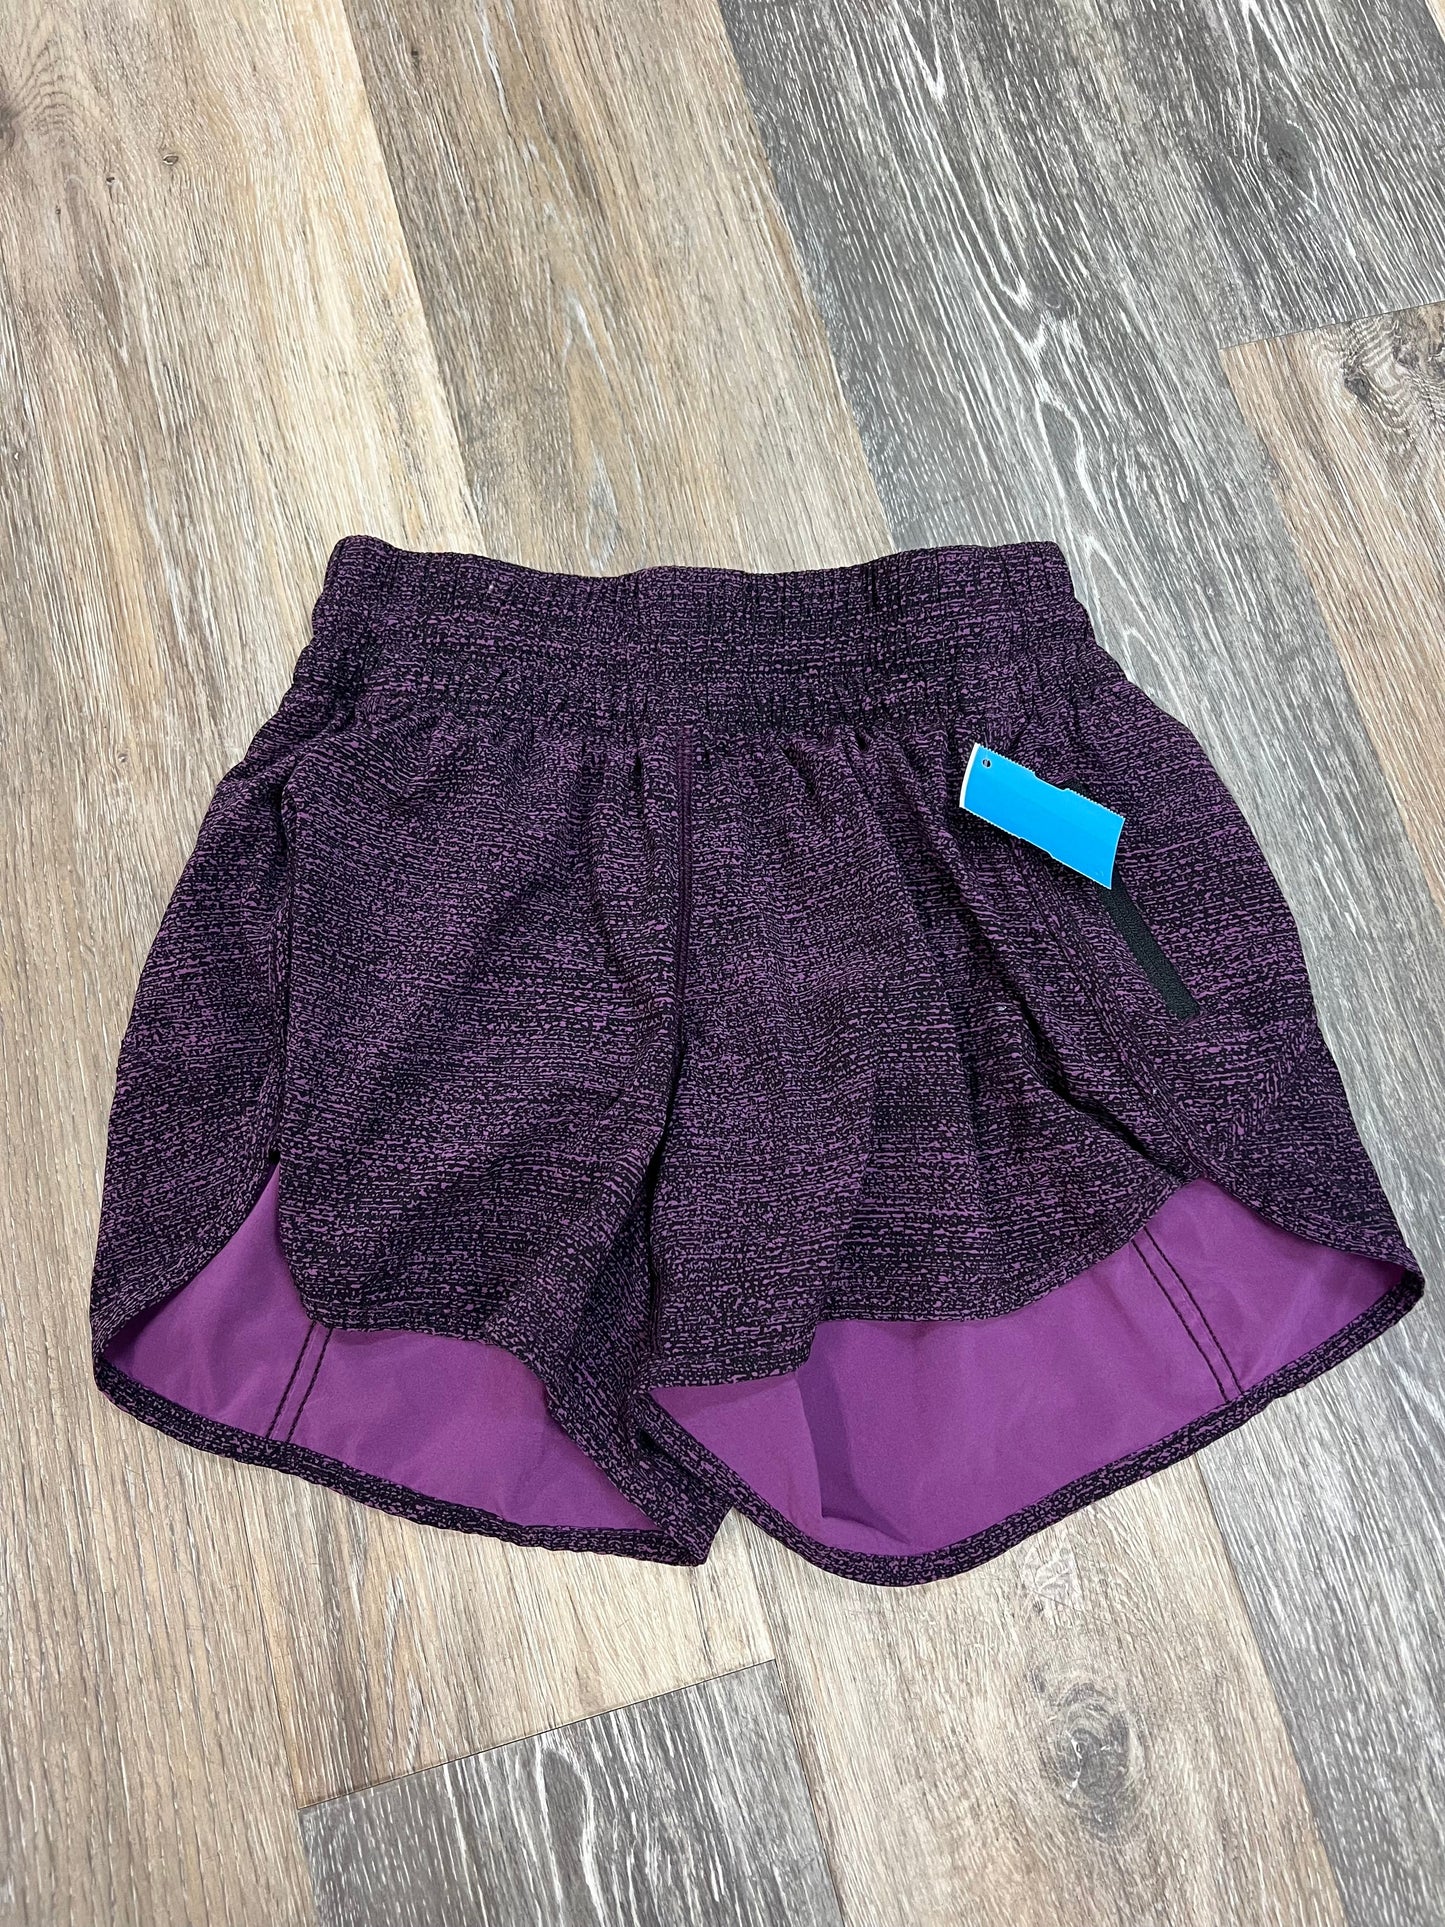 Purple Athletic Shorts Lululemon, Size 8